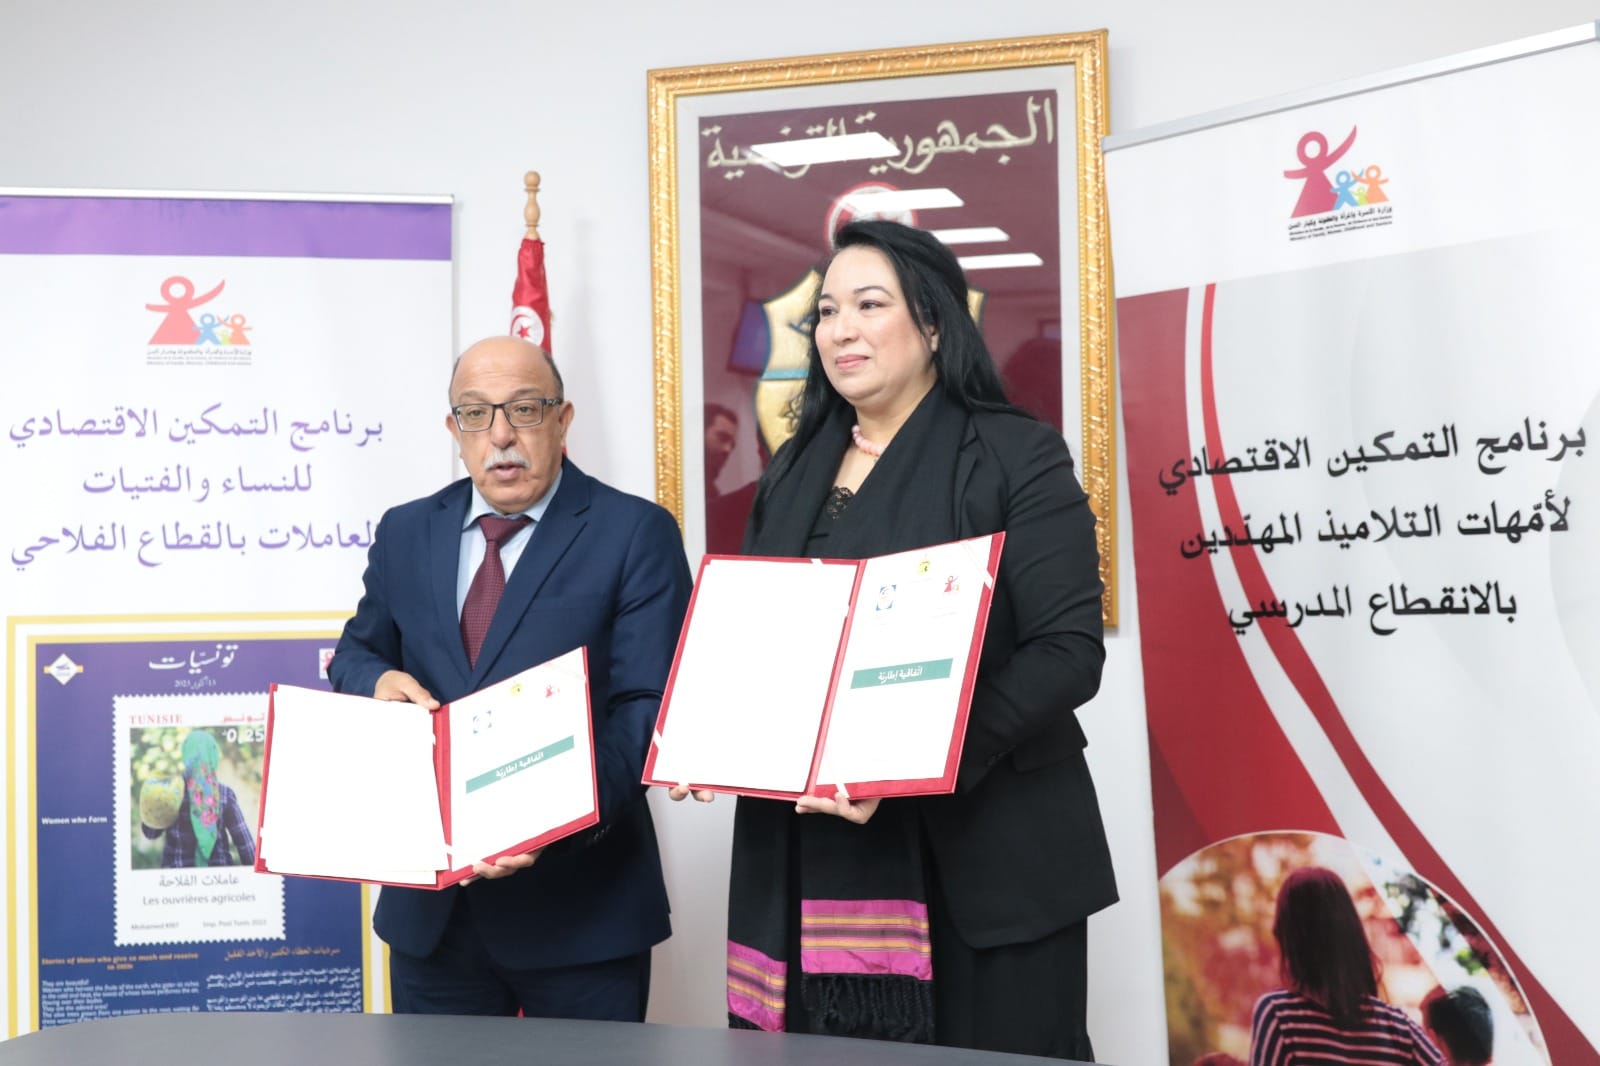 تونس تتجه نحو تمكين اقتصادي للنساء: توقيع اتفاقية إطارية بين وزارتي الأسرة والتشغيل